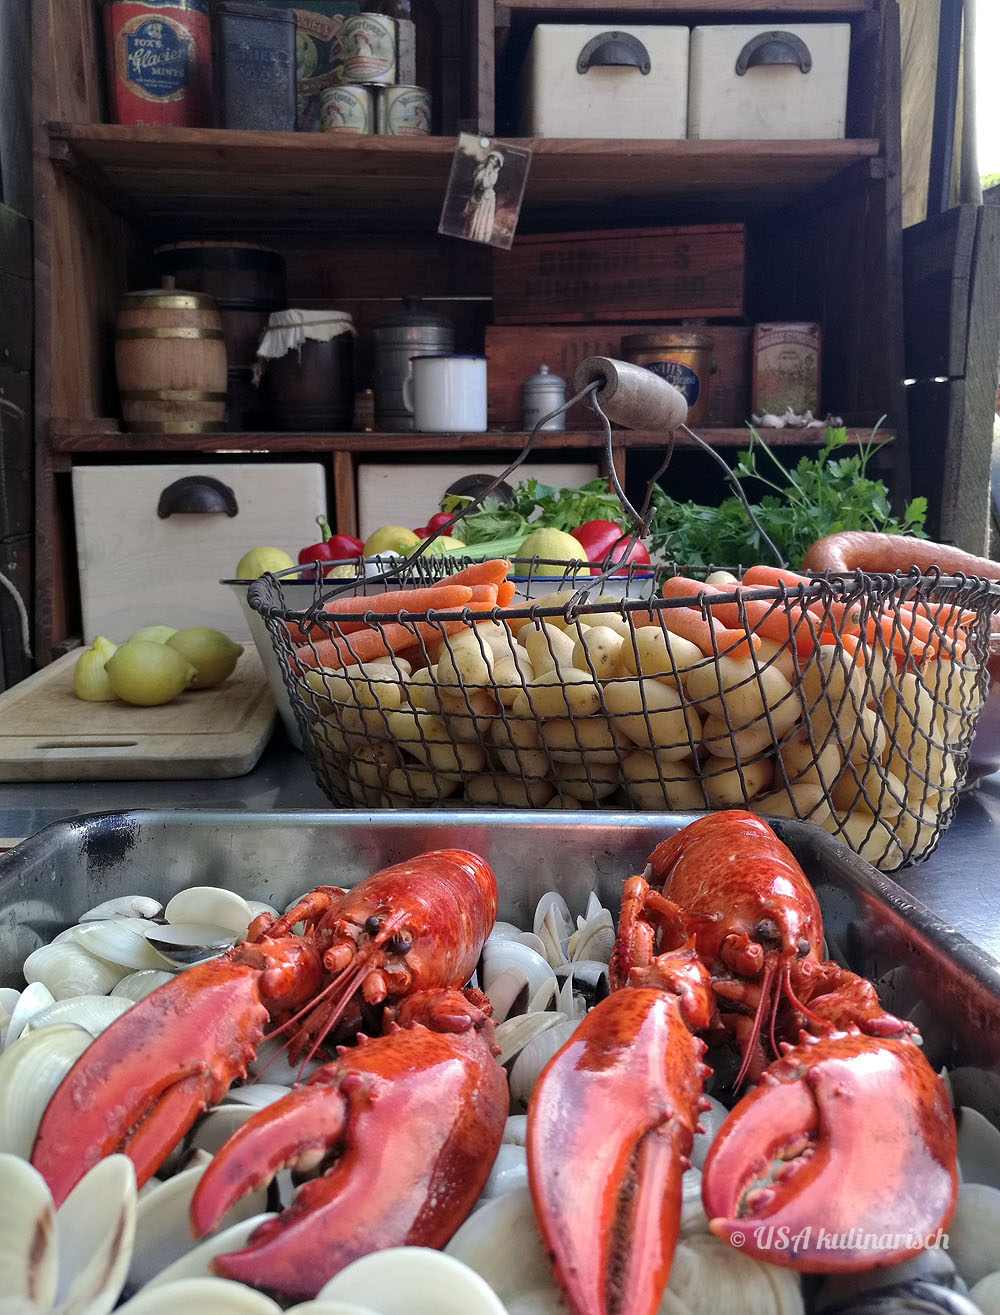 Low Country Boil: “Shrimps für alle!”